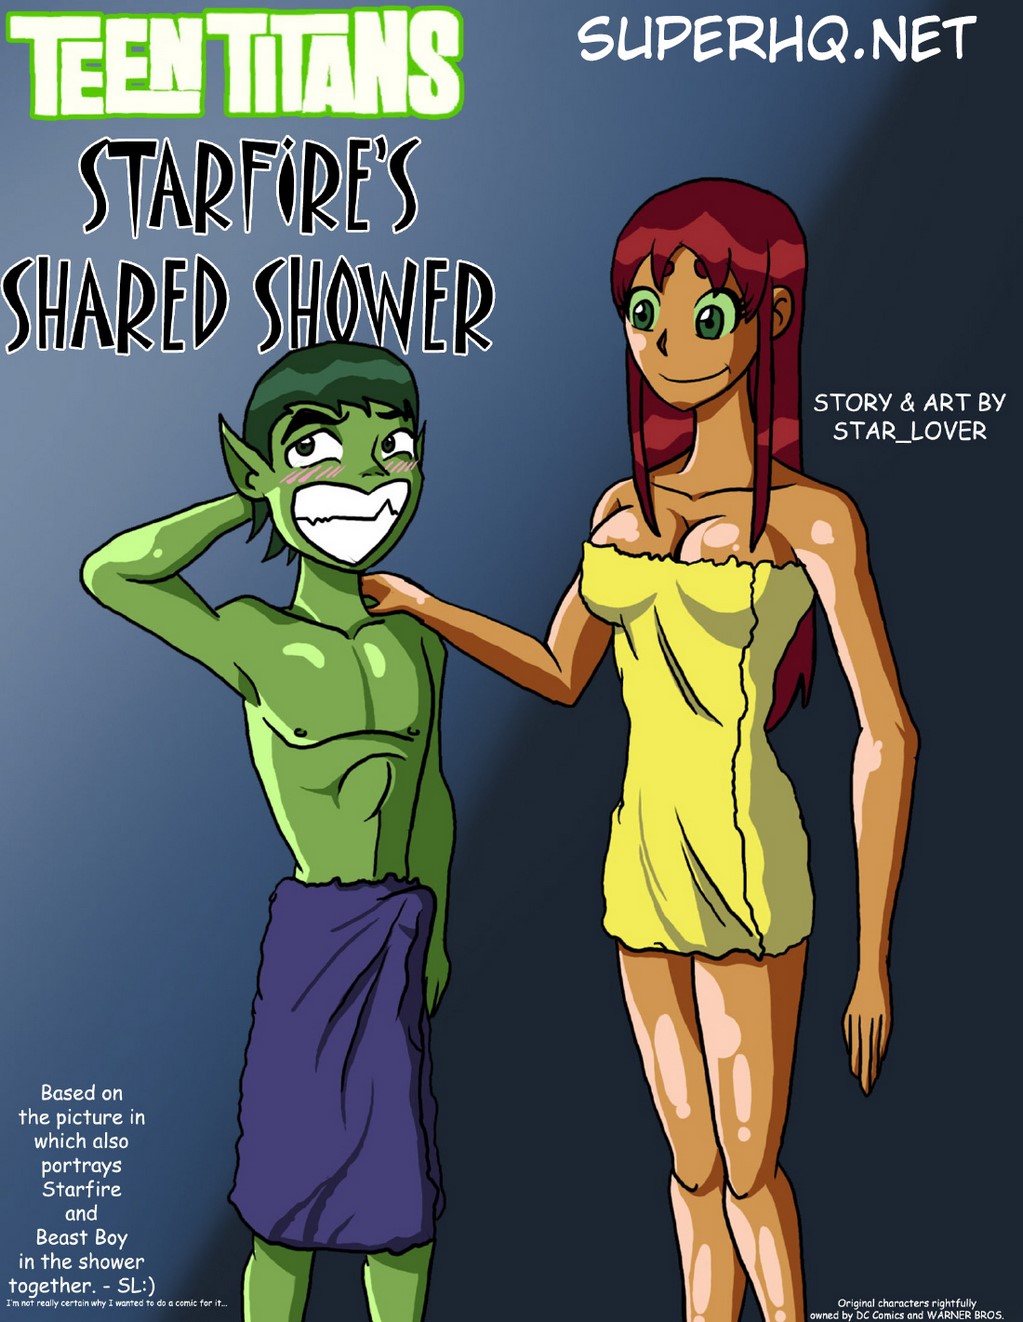 Starfire’s Shared Shower - 2